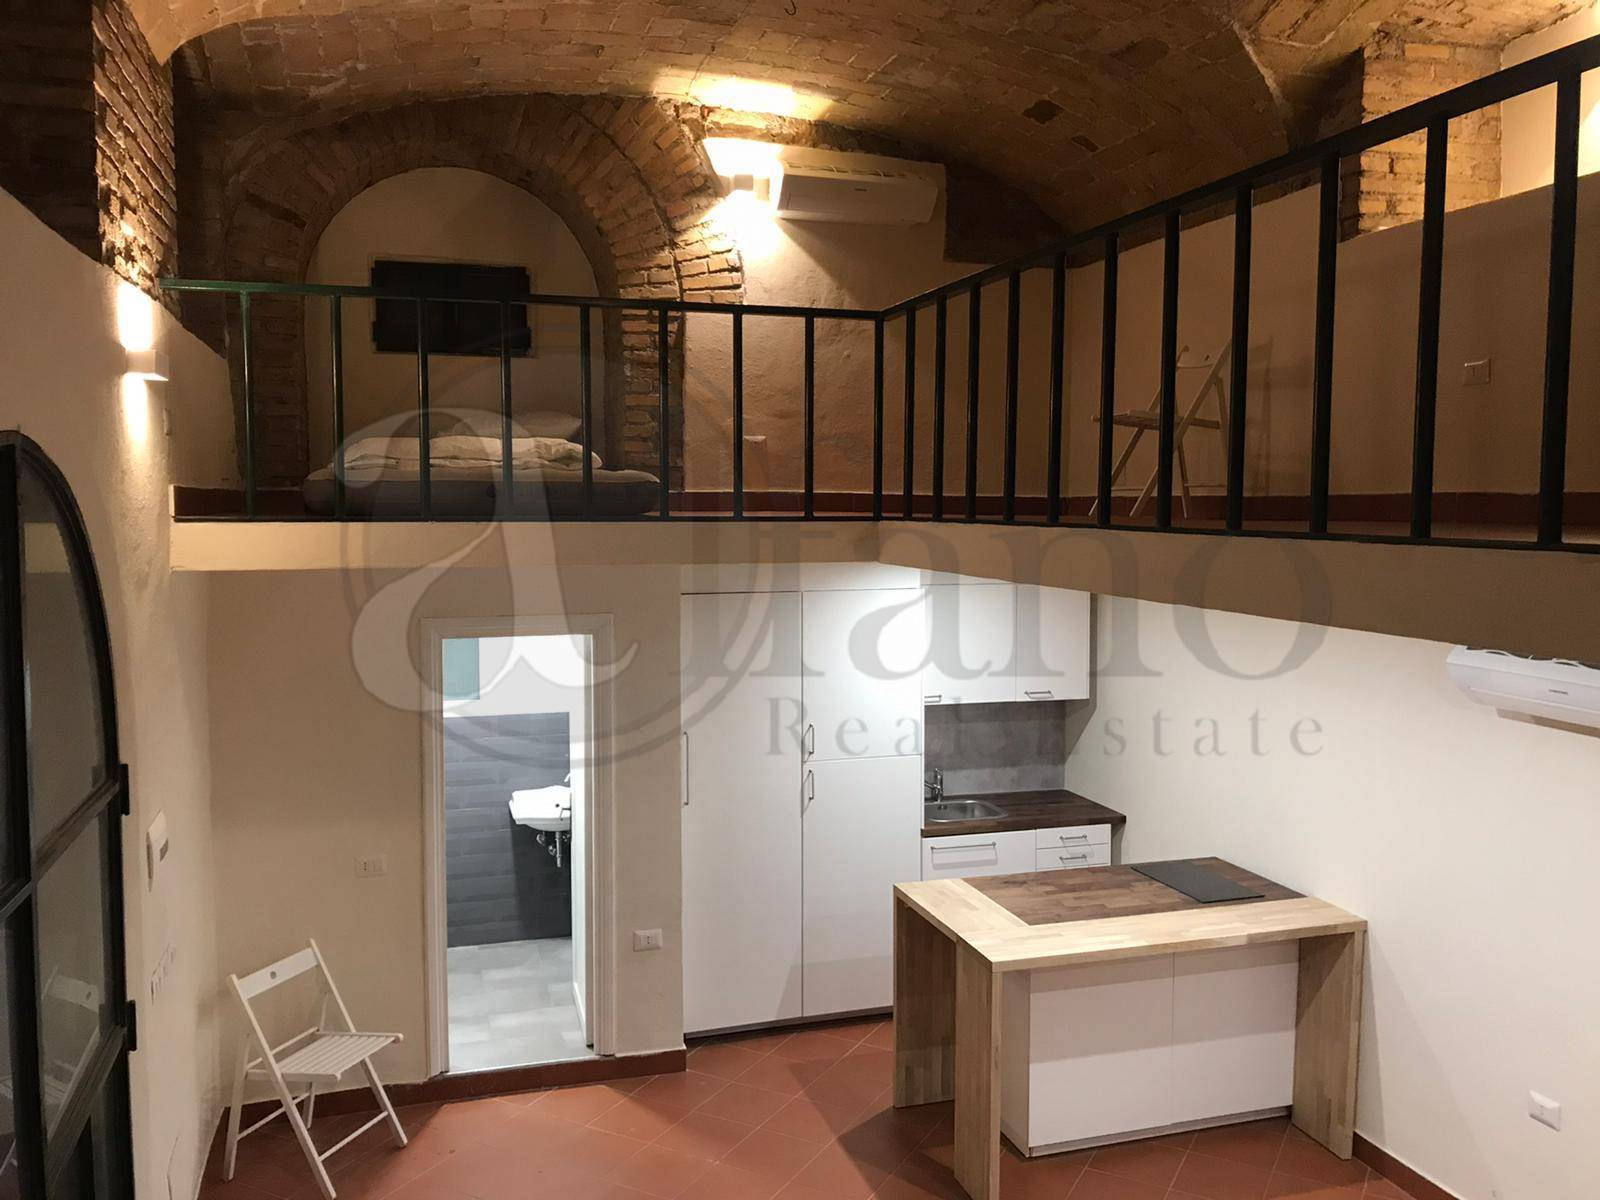 Appartamento in vendita a Roma, 1 locali, zona Zona: 30 . Prati, Borgo, San Pietro, prezzo € 150.000 | CambioCasa.it